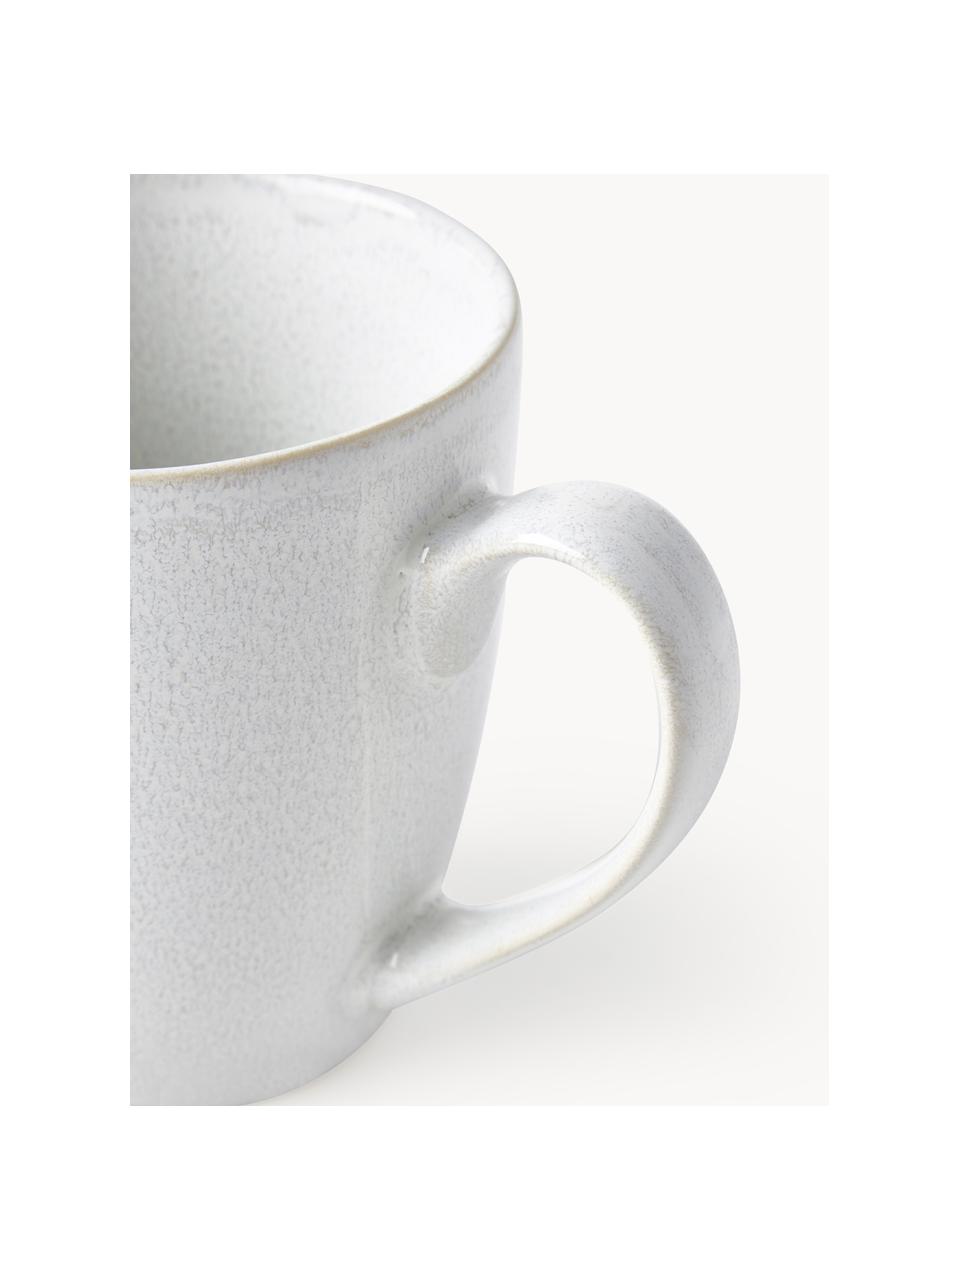 Kaffeetassen Gemma mit reaktiver Glasur, 2 Stück, Steinzeug, Weiß, Ø 12 x H 11 cm, 400 ml